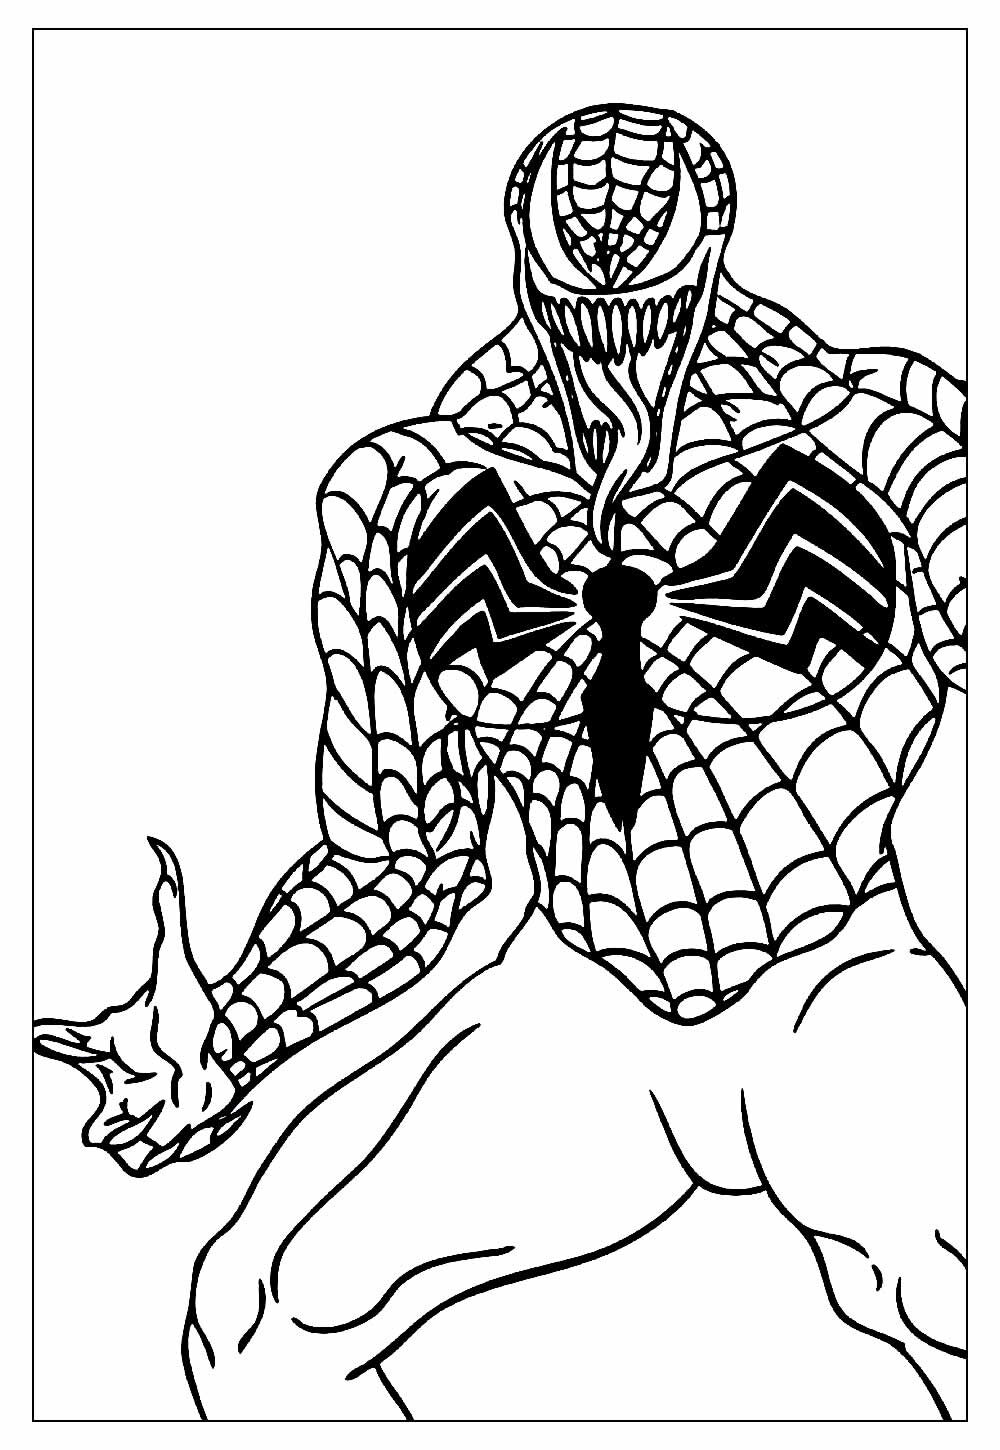 Desenho do Venom para colorir